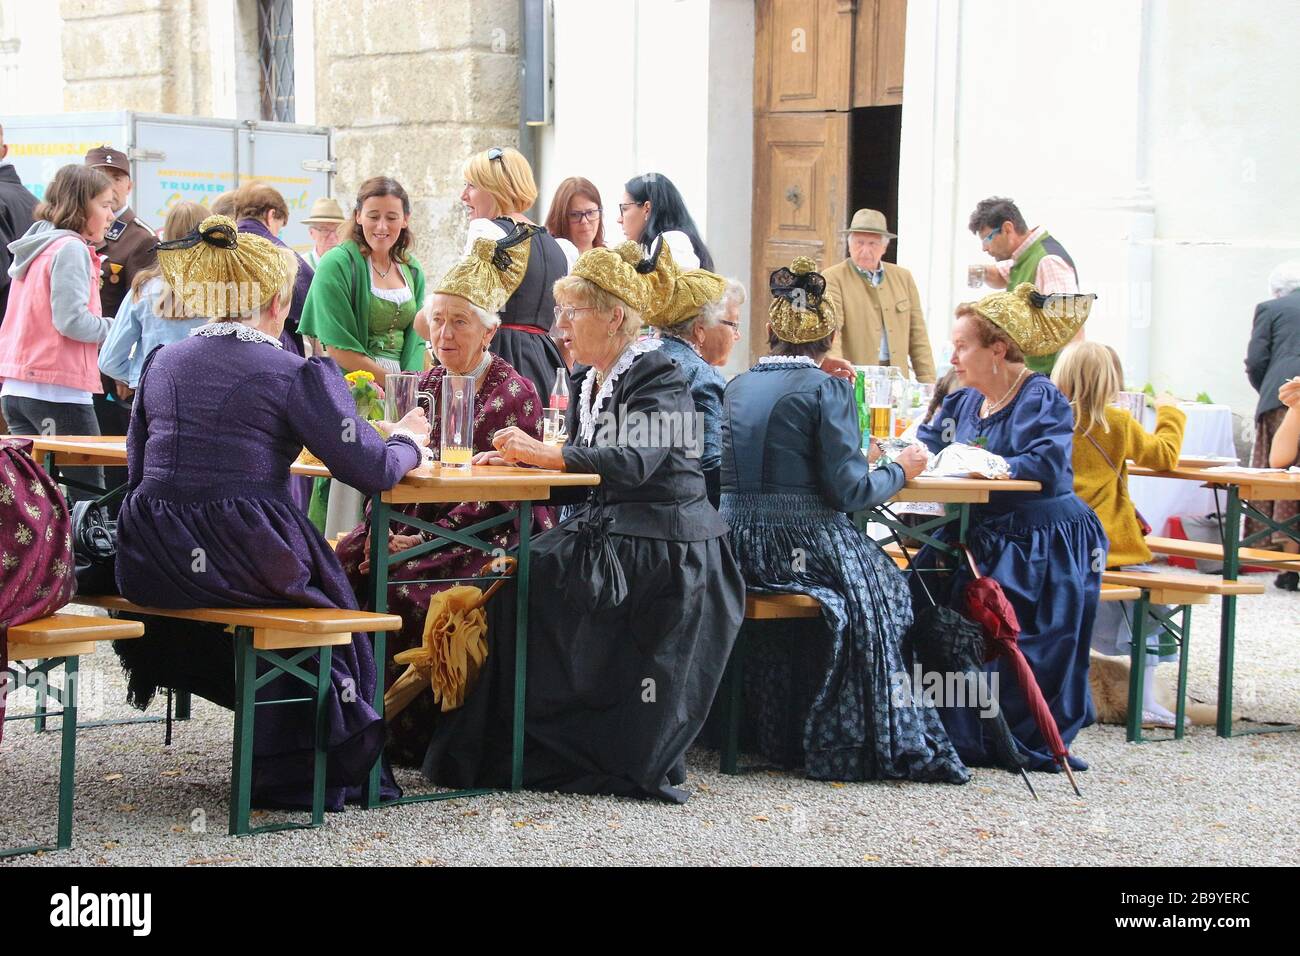 Bei einer Parochialfestlichkeit auf dem Land in Mattsee, Österreich, Europa. Die Leute sitzen zusammen. Frauen mit traditionellen Trachten und goldener Haube. Stockfoto